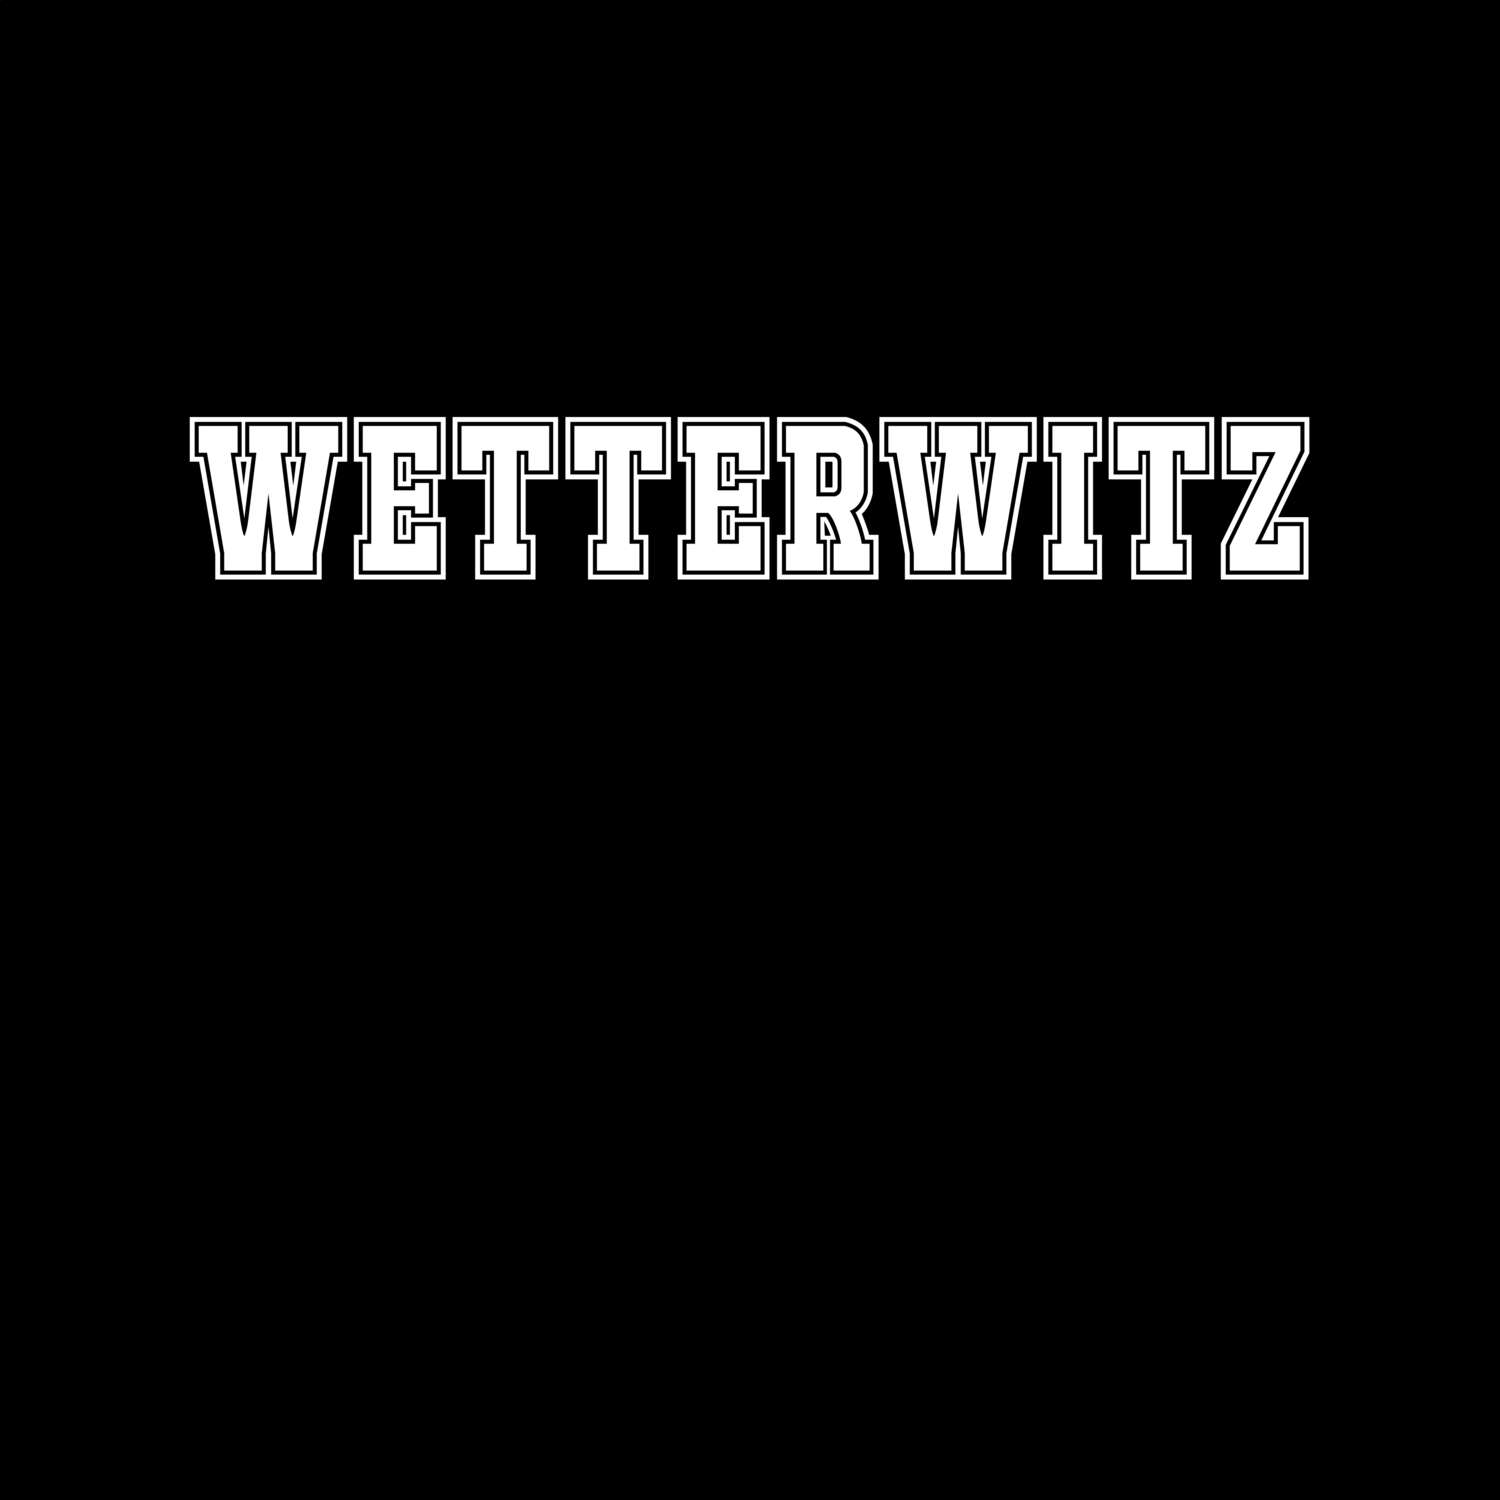 Wetterwitz T-Shirt »Classic«